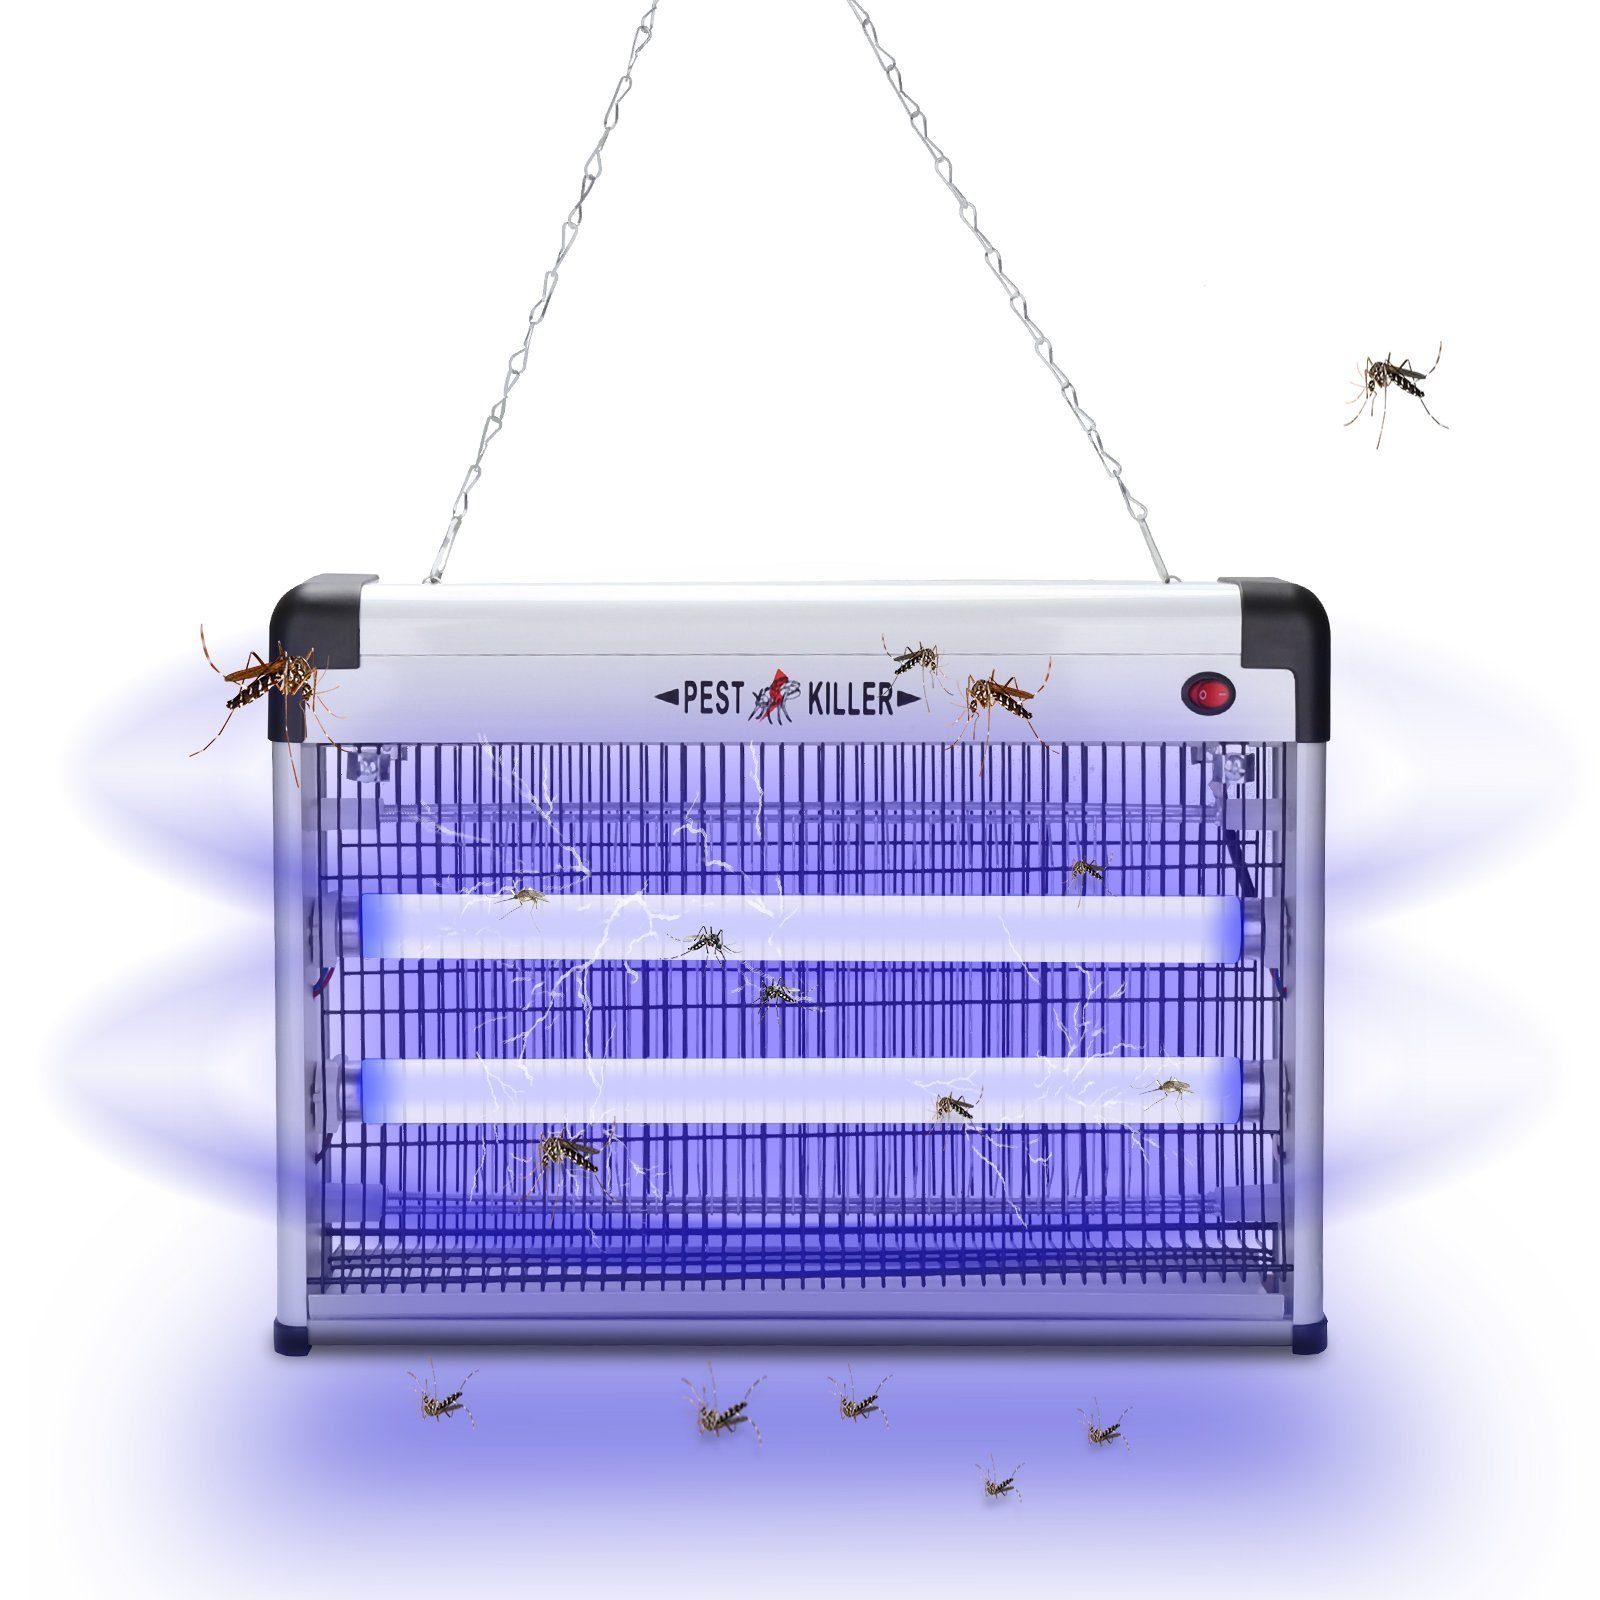 Clanmacy Ultraschall-Tierabwehr Elektrischer Mückenlampe 3W LED Insektenfalle